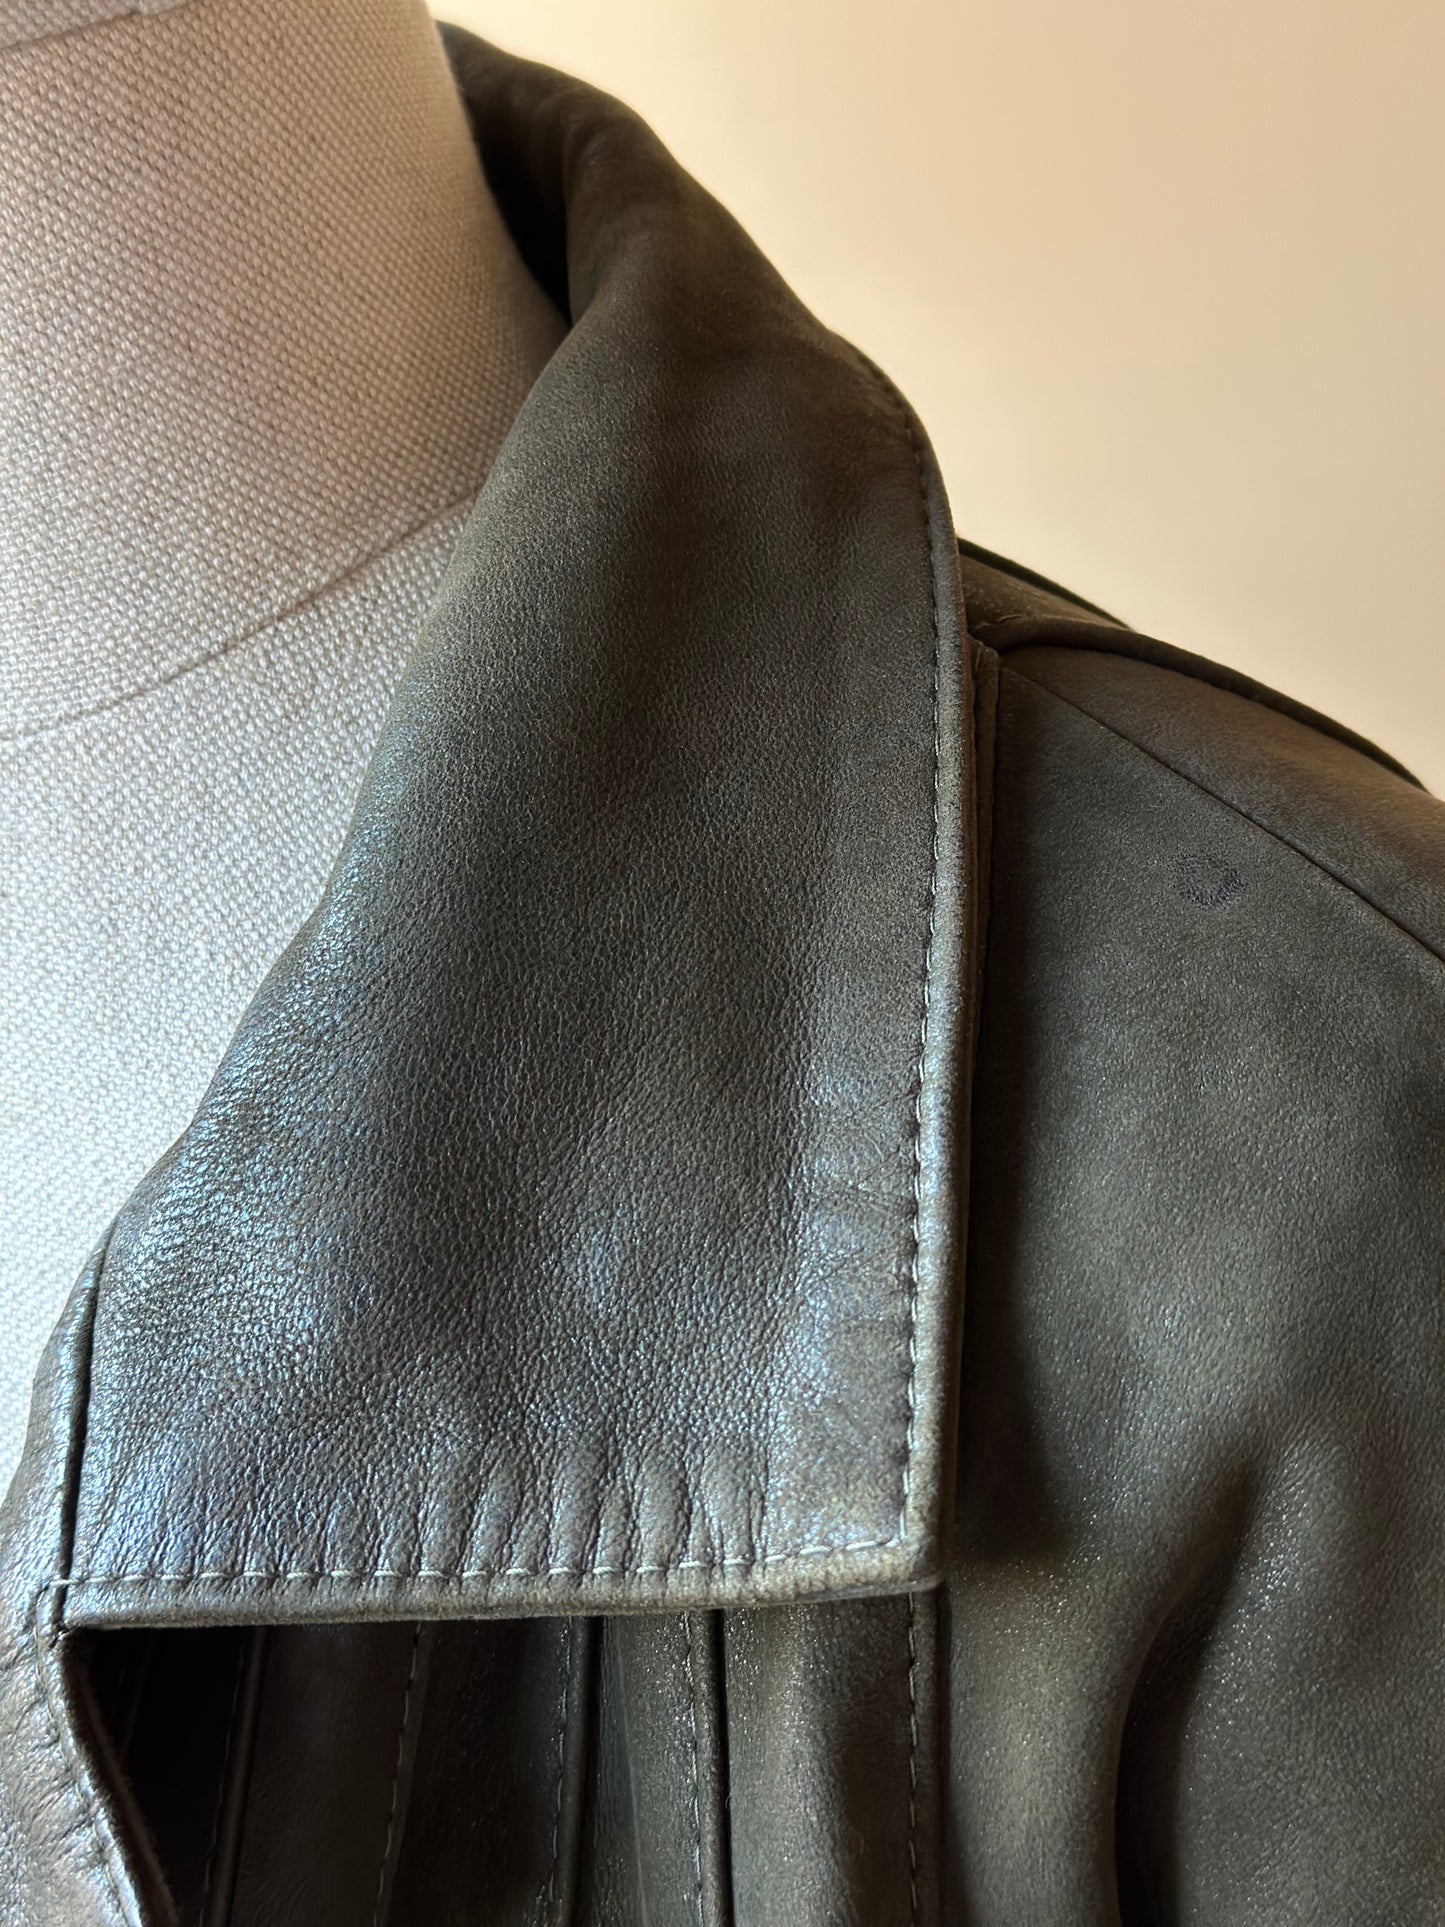 Vintage Olive Green Leather Coat